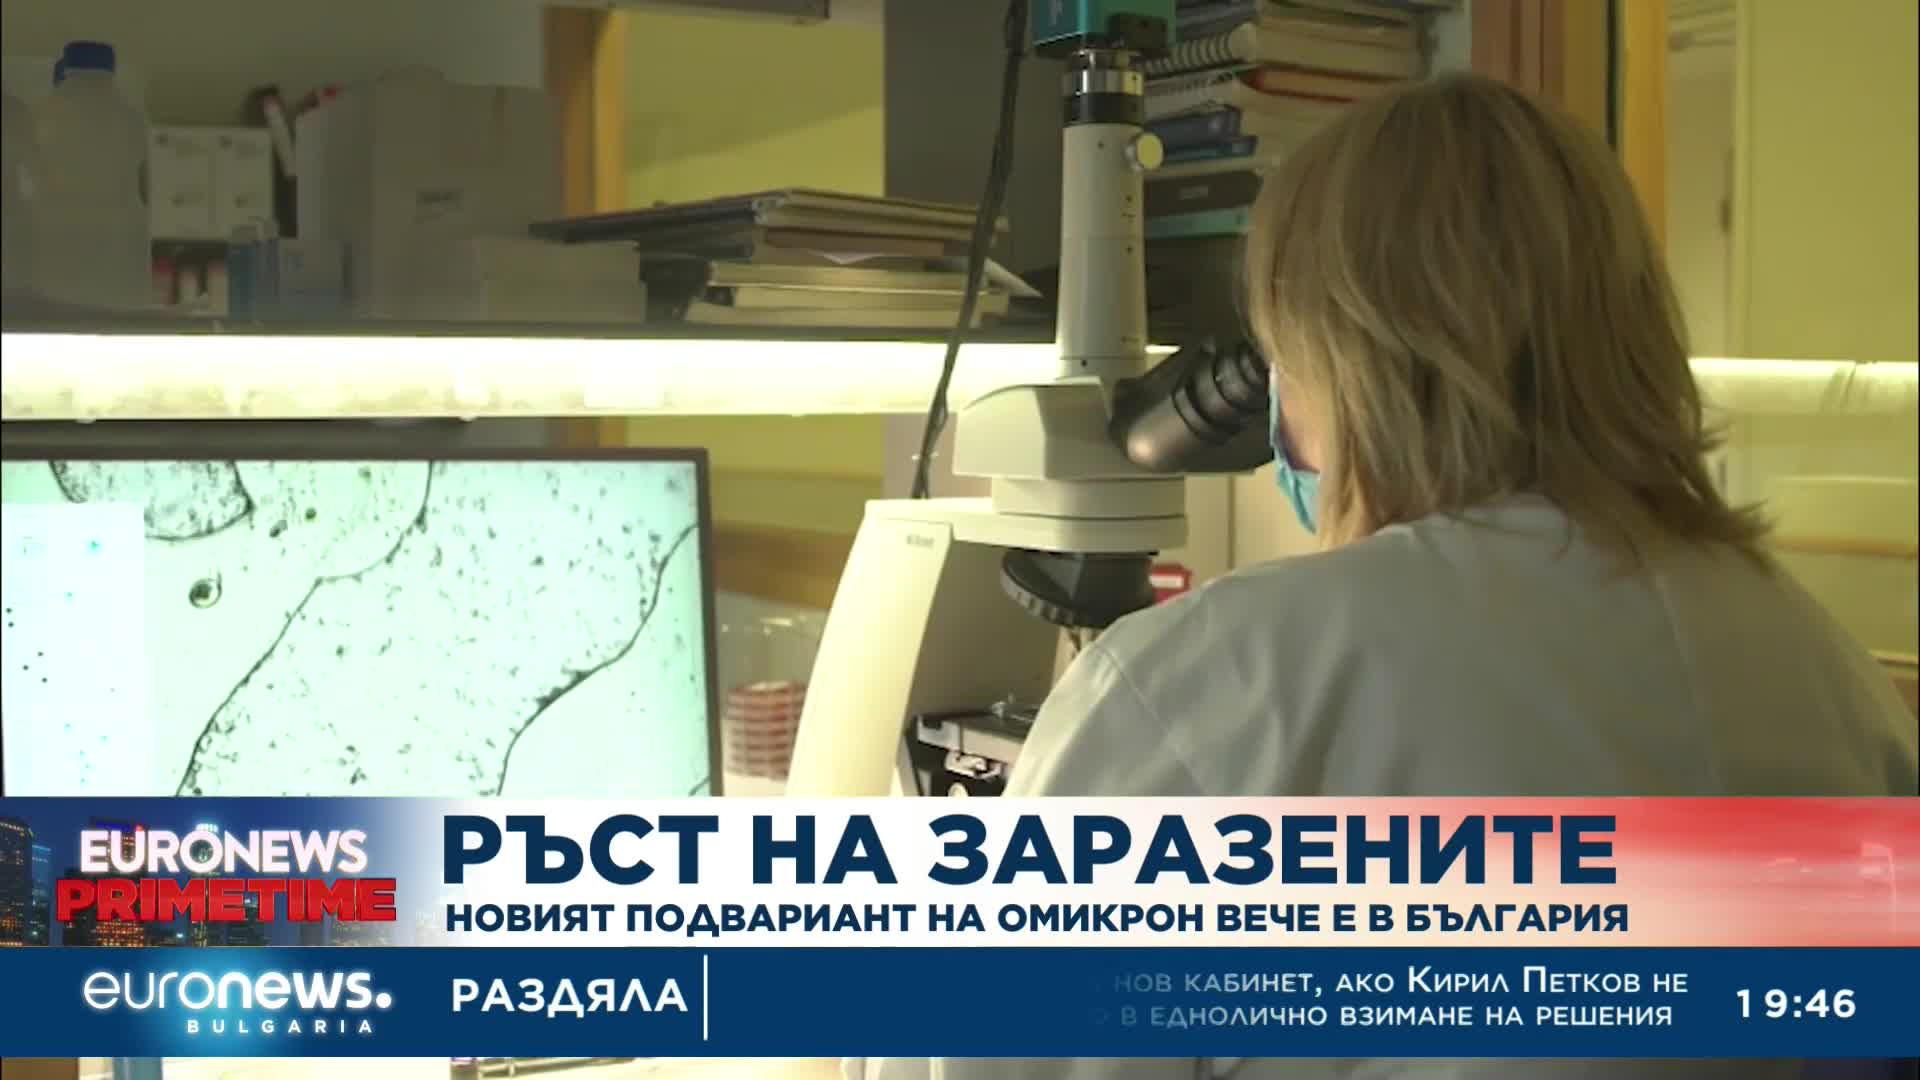 Ръст на заразените: Новият подвариант на щама Омикрон вече е в България